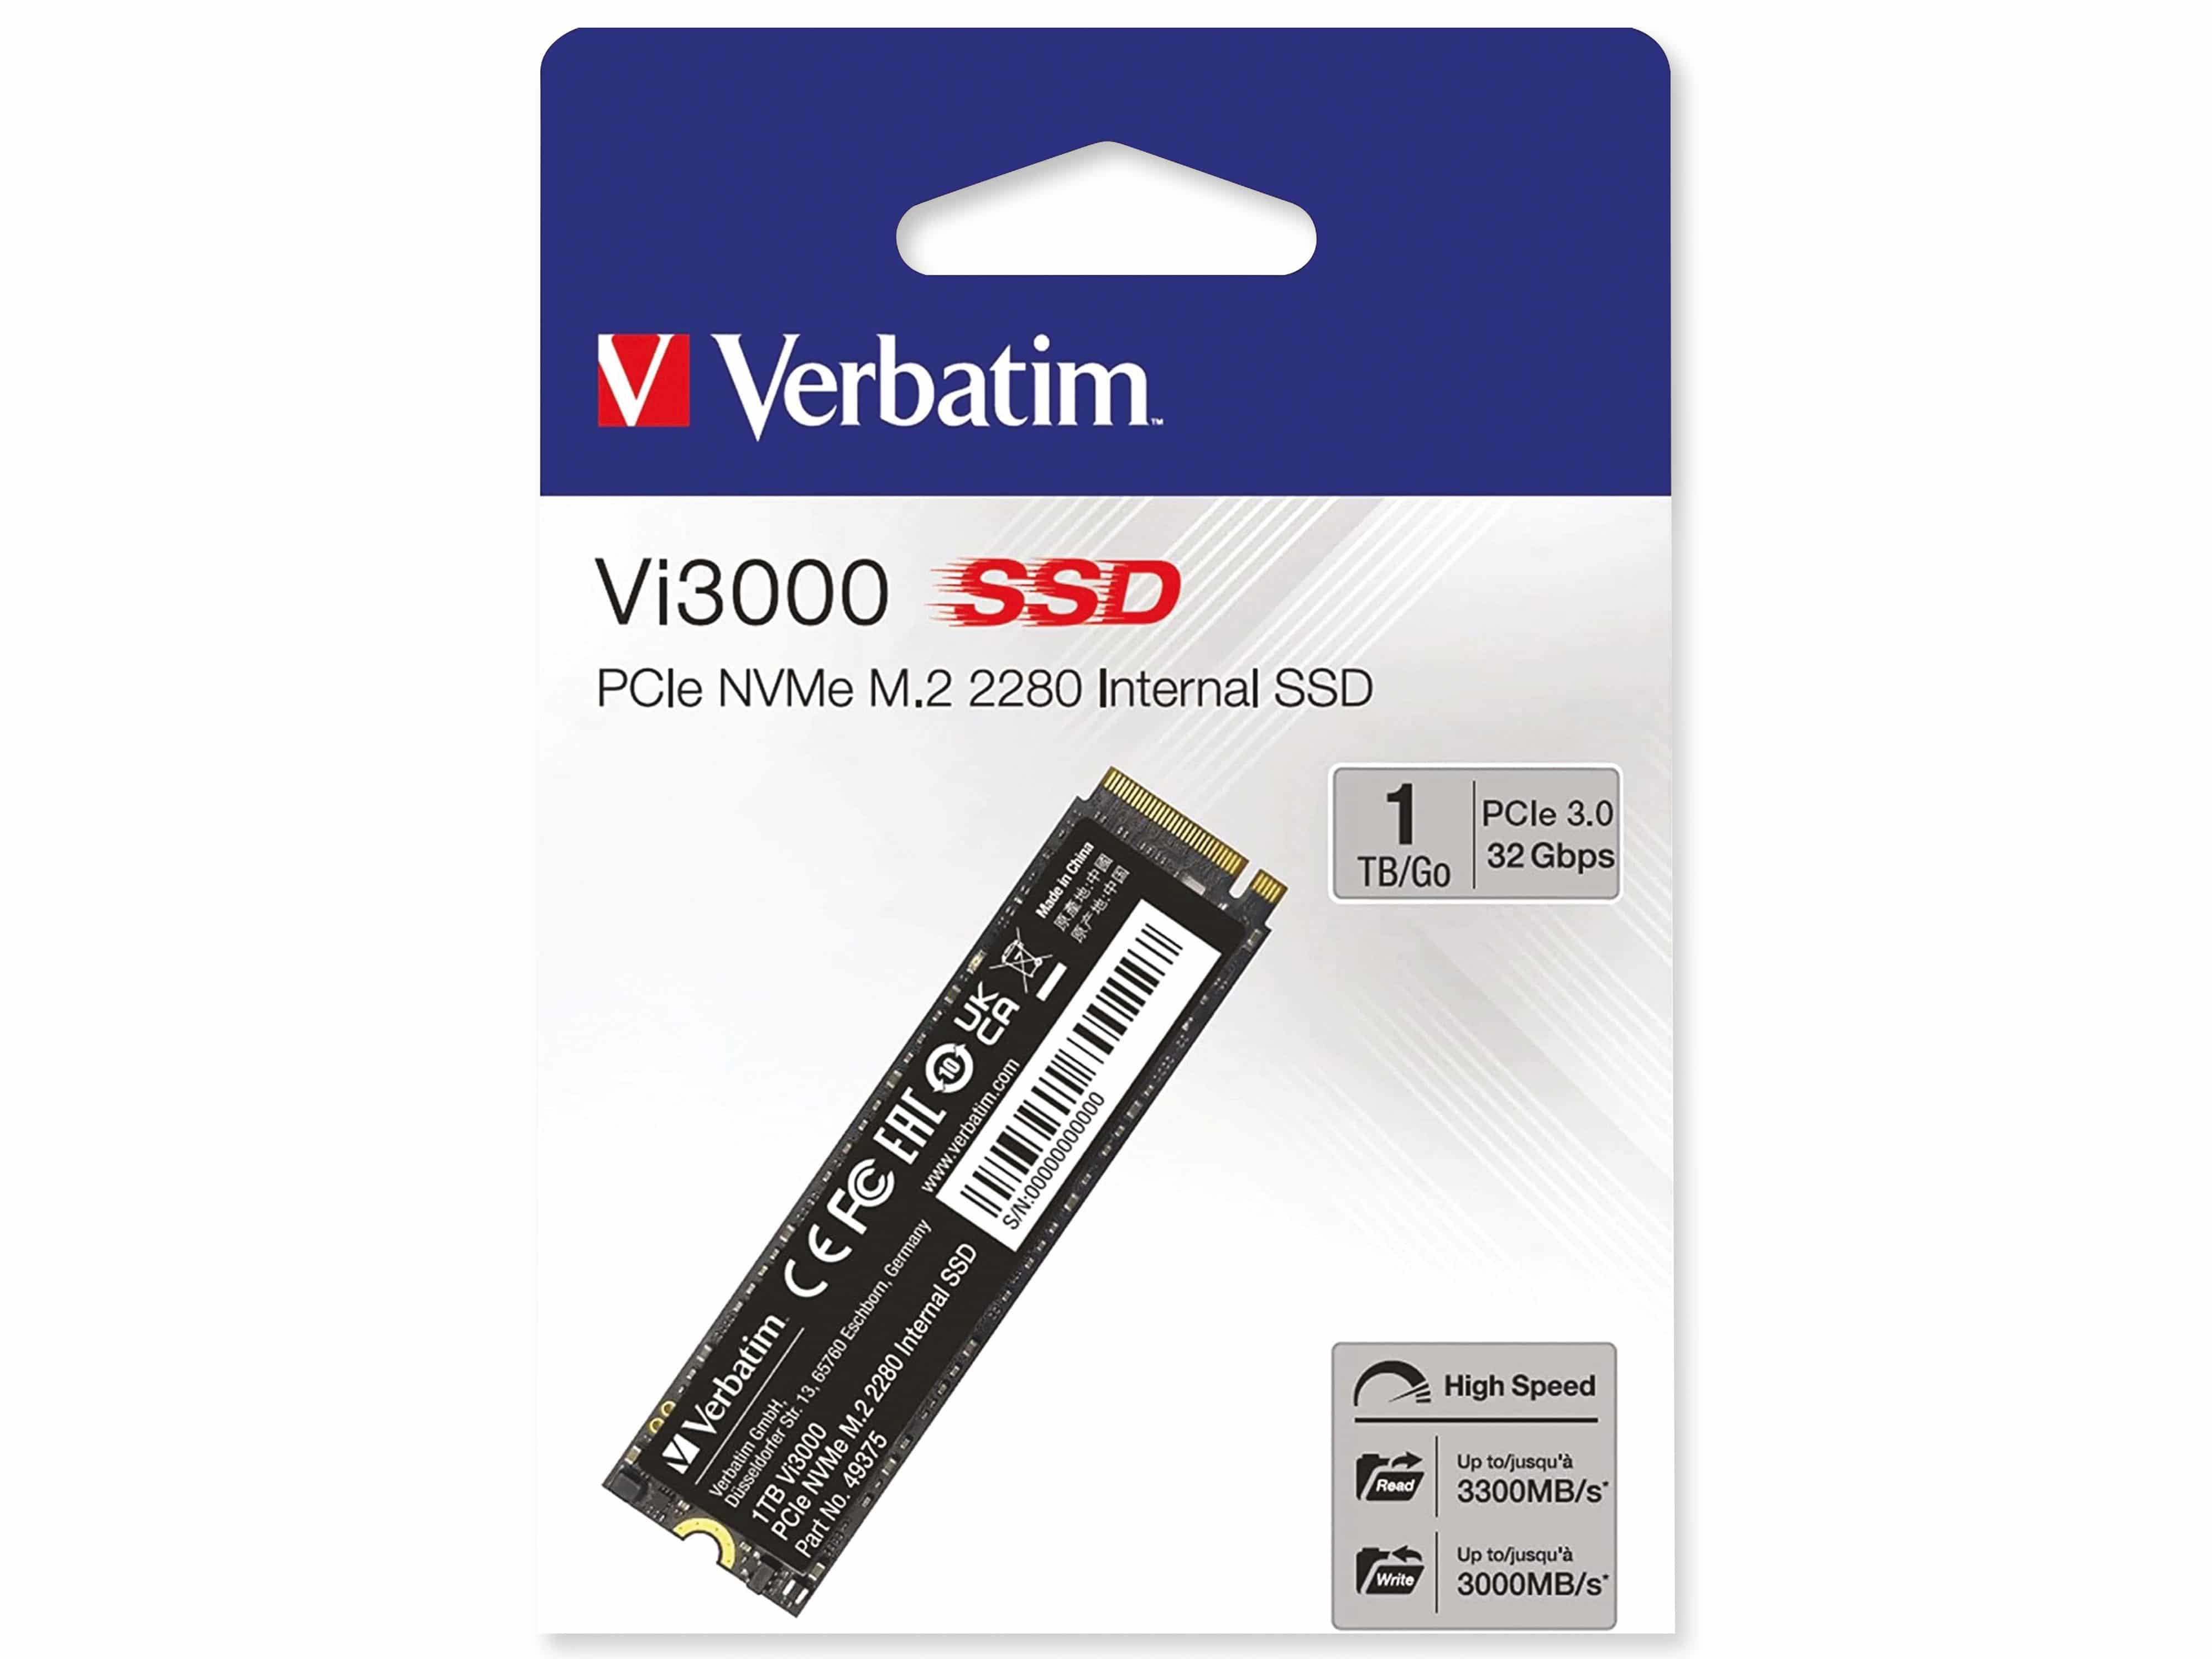 VERBATIM M.2 2280 SSD Vi3000, PCIe 3.0, 1 TB